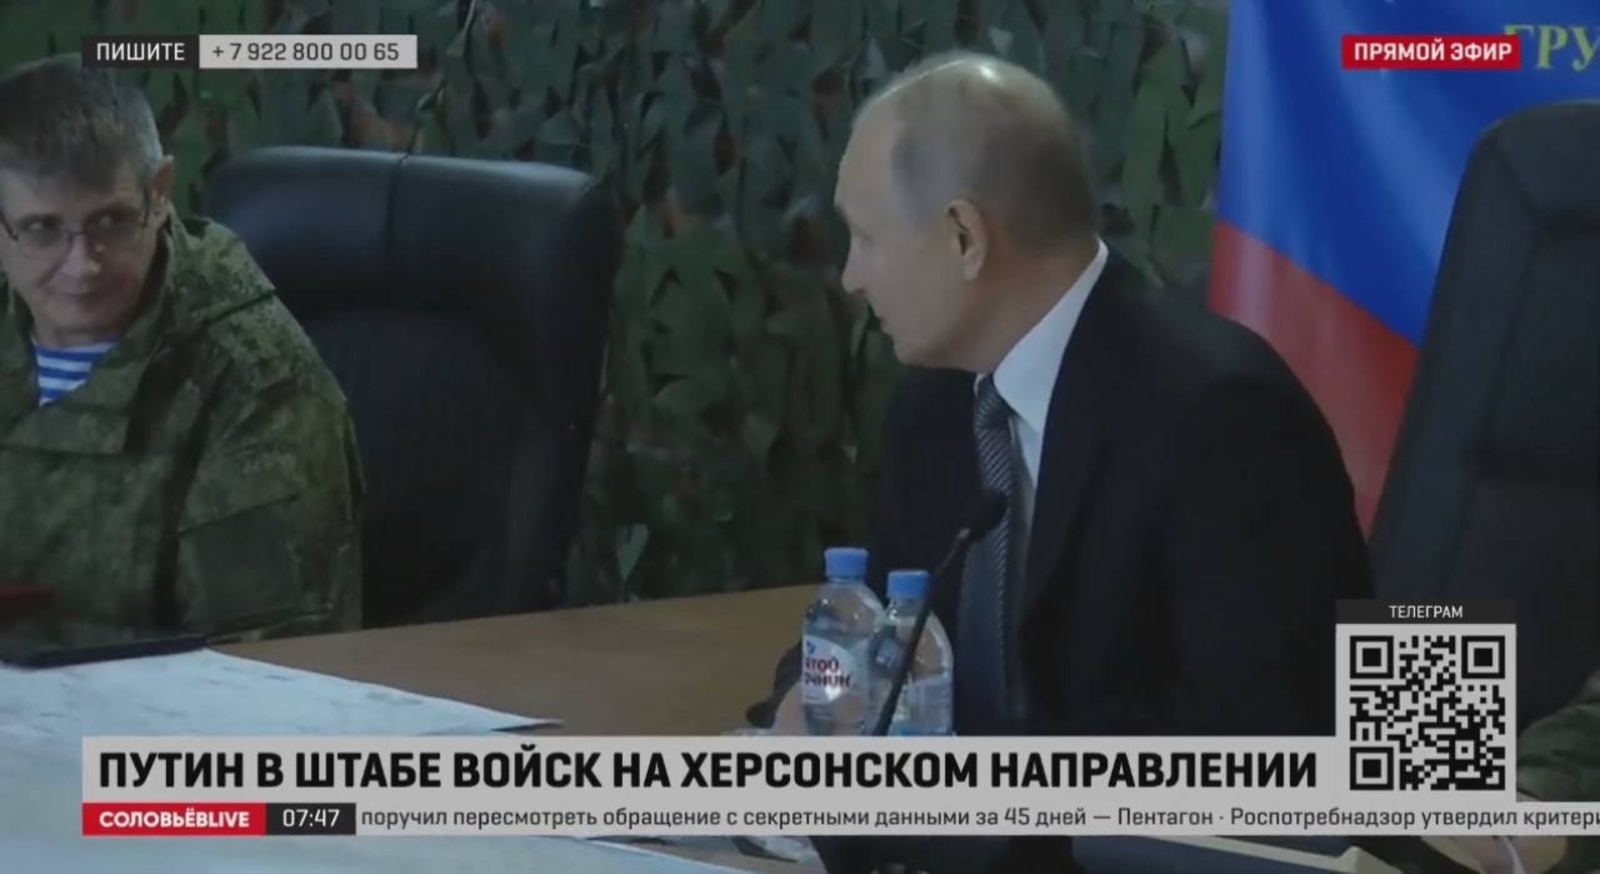 Владимир Путин посетил херсонское направление СВО